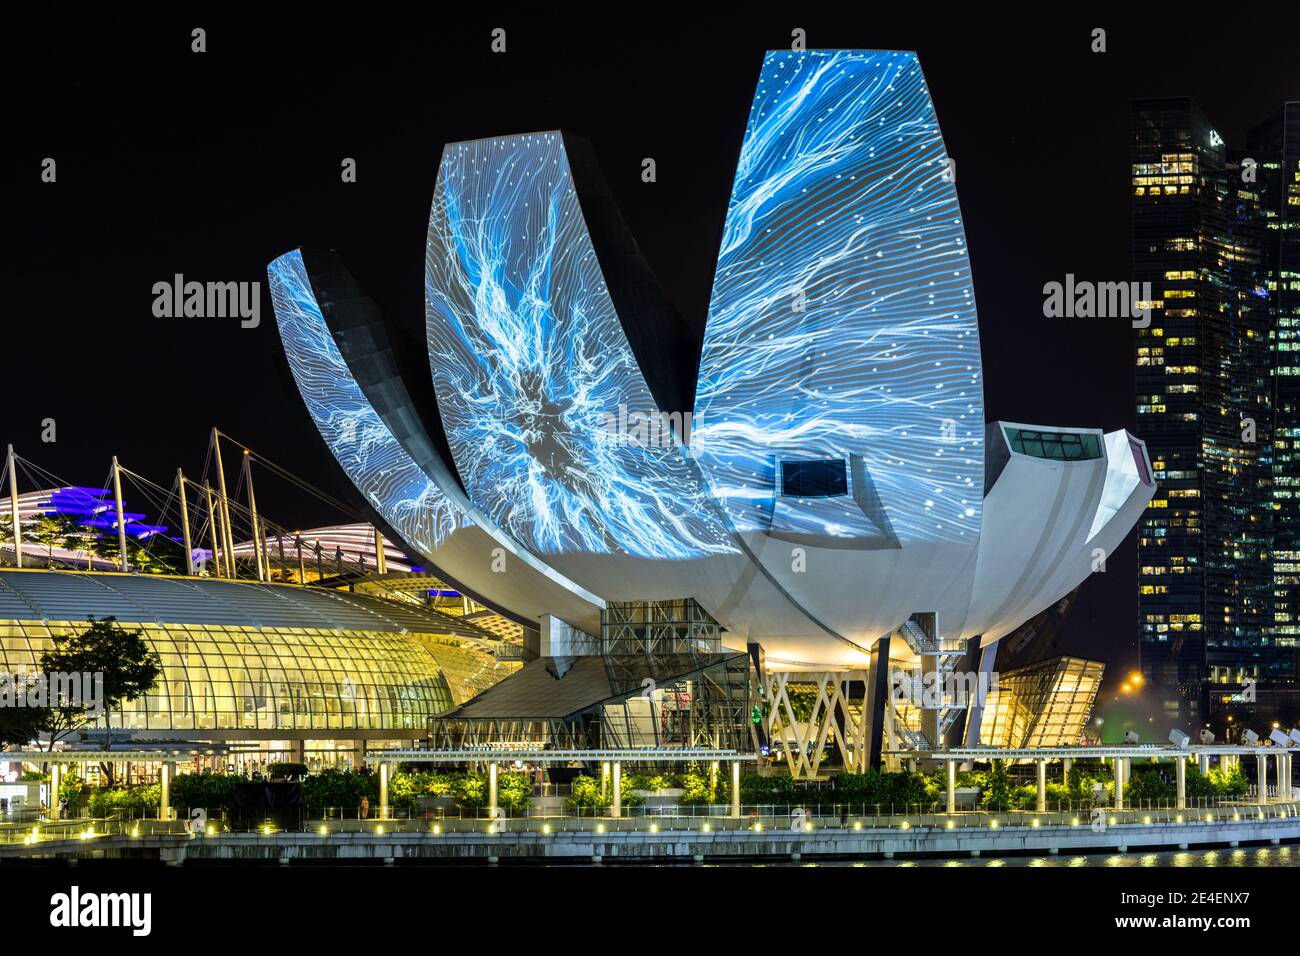 Hago un evento de Marina Bay alrededor de Marina Bay, Singapur. Un montón de esculturas de arte con hermosa luz a lo largo de la bahía Foto de stock